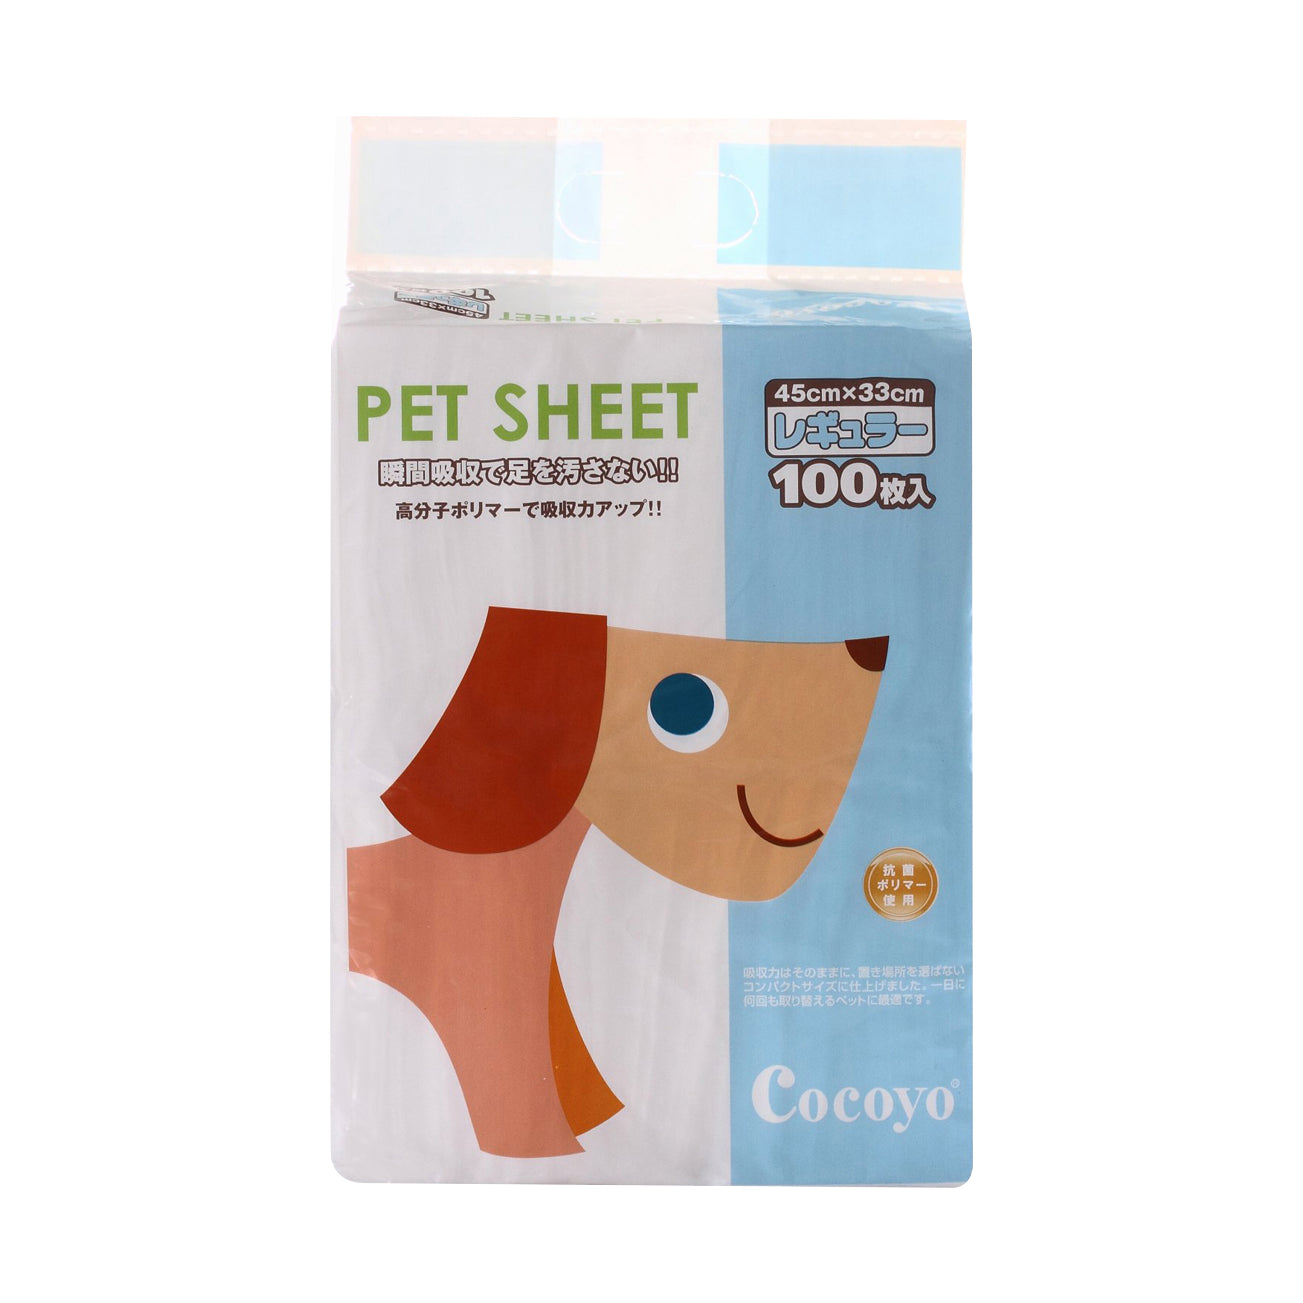 Cocoyo Pet Sheet Pee Pads (3 Sizes)